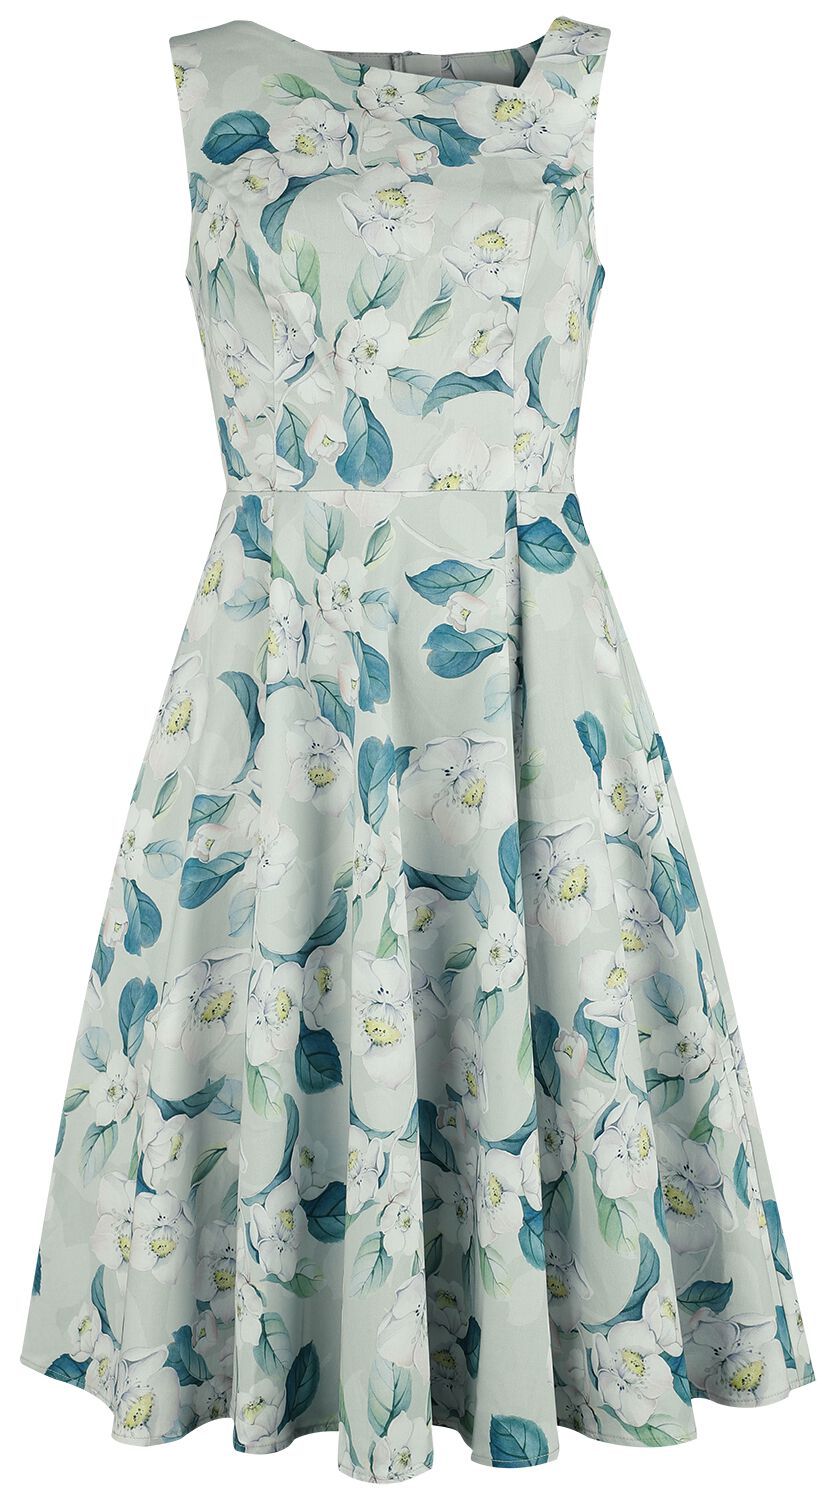 H&R London - Rockabilly Kleid knielang - Rey Floral Swing Dress - XS bis 4XL - für Damen - Größe XL - grün/weiß